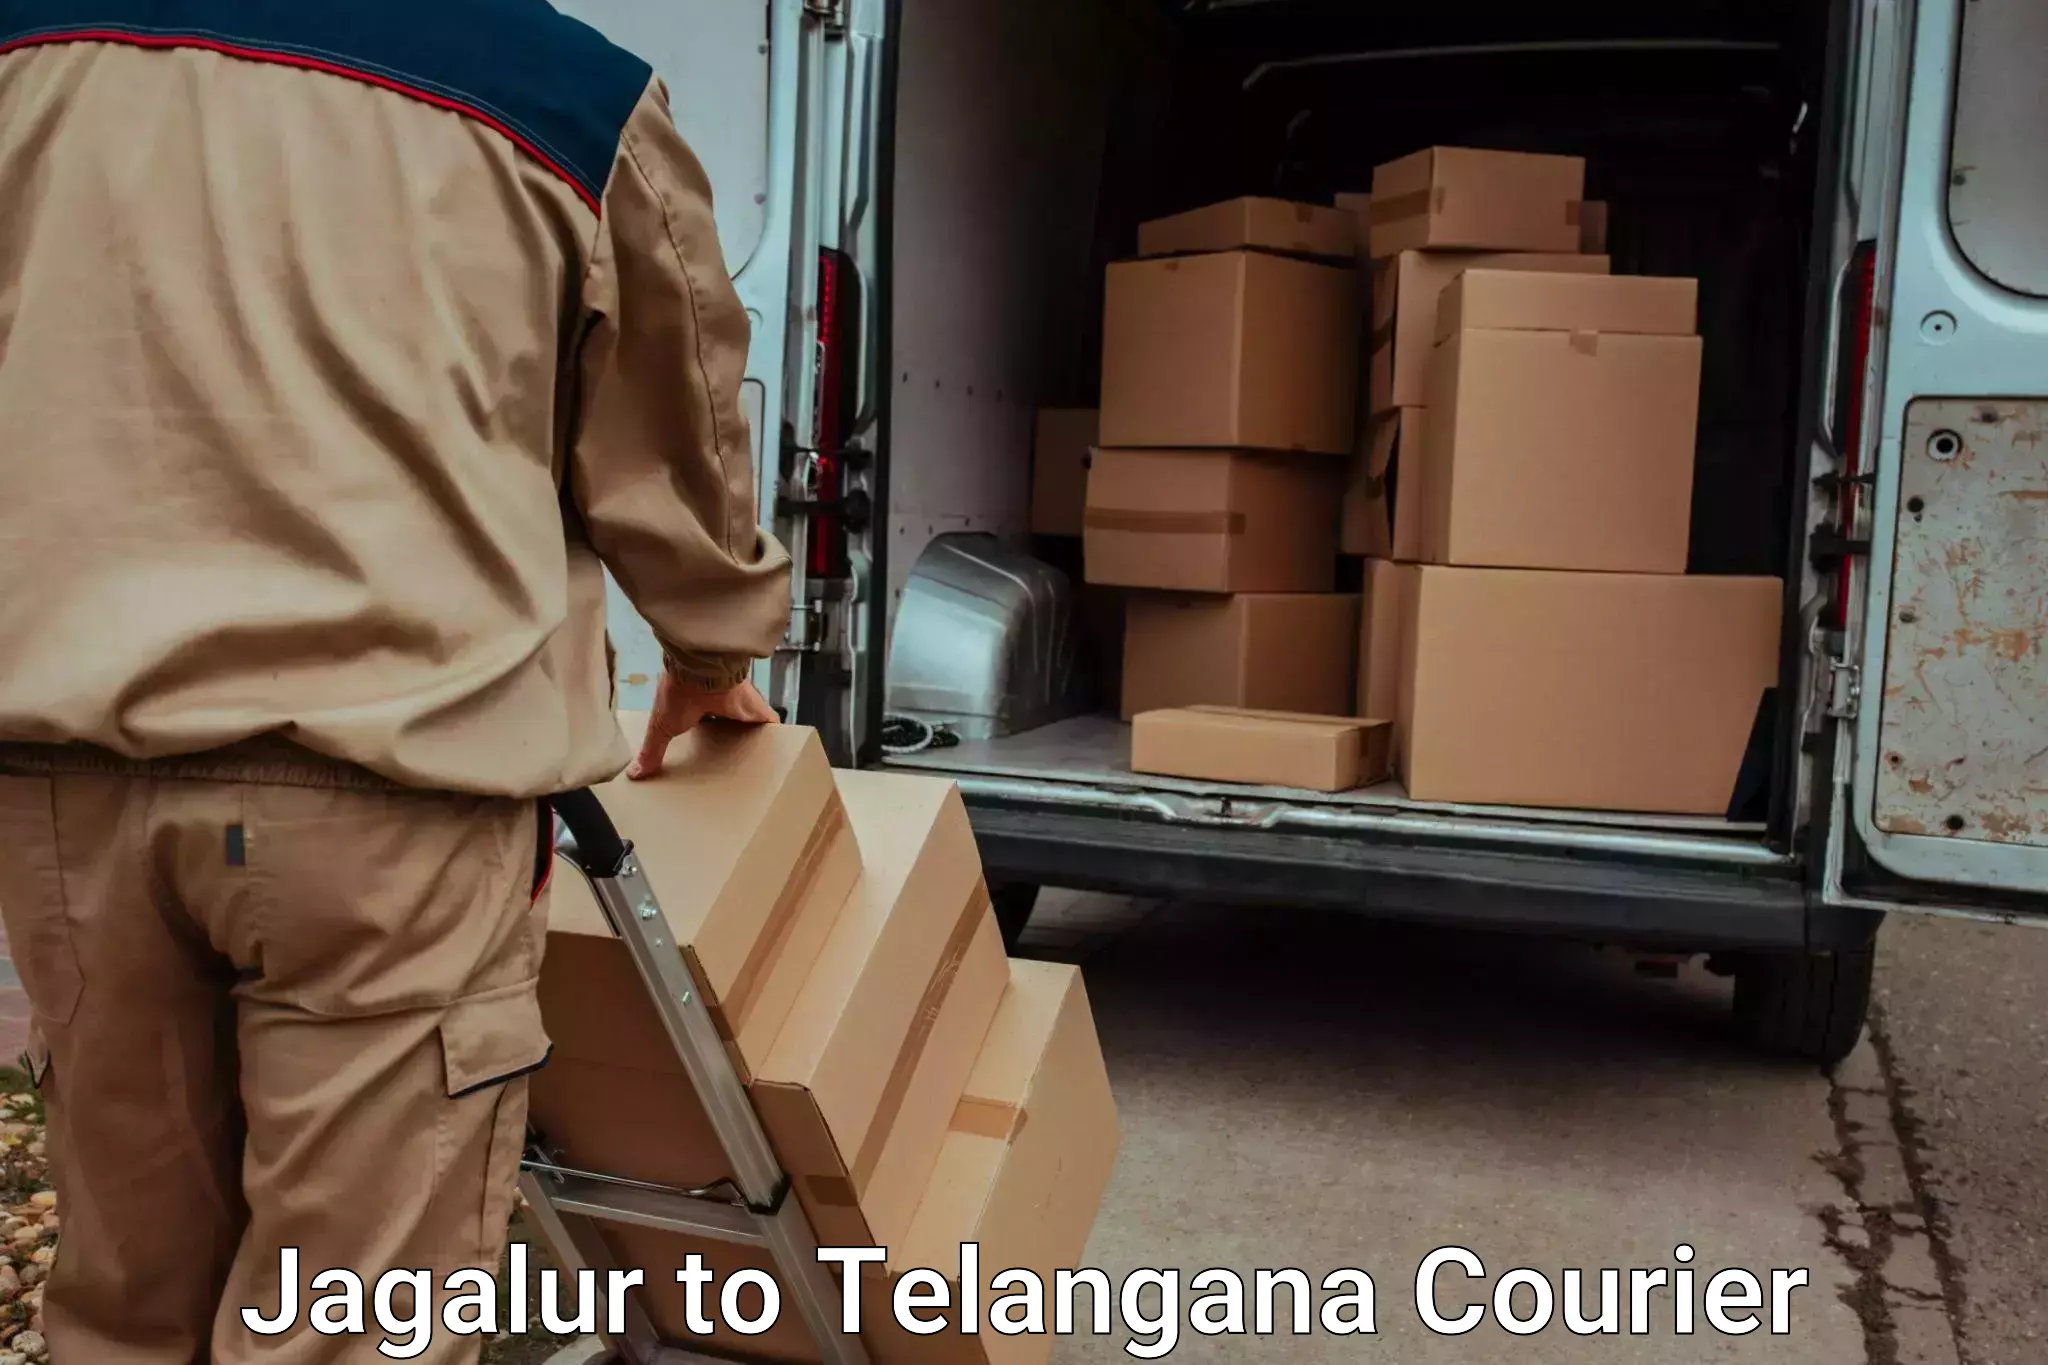 Same day luggage service Jagalur to Warangal